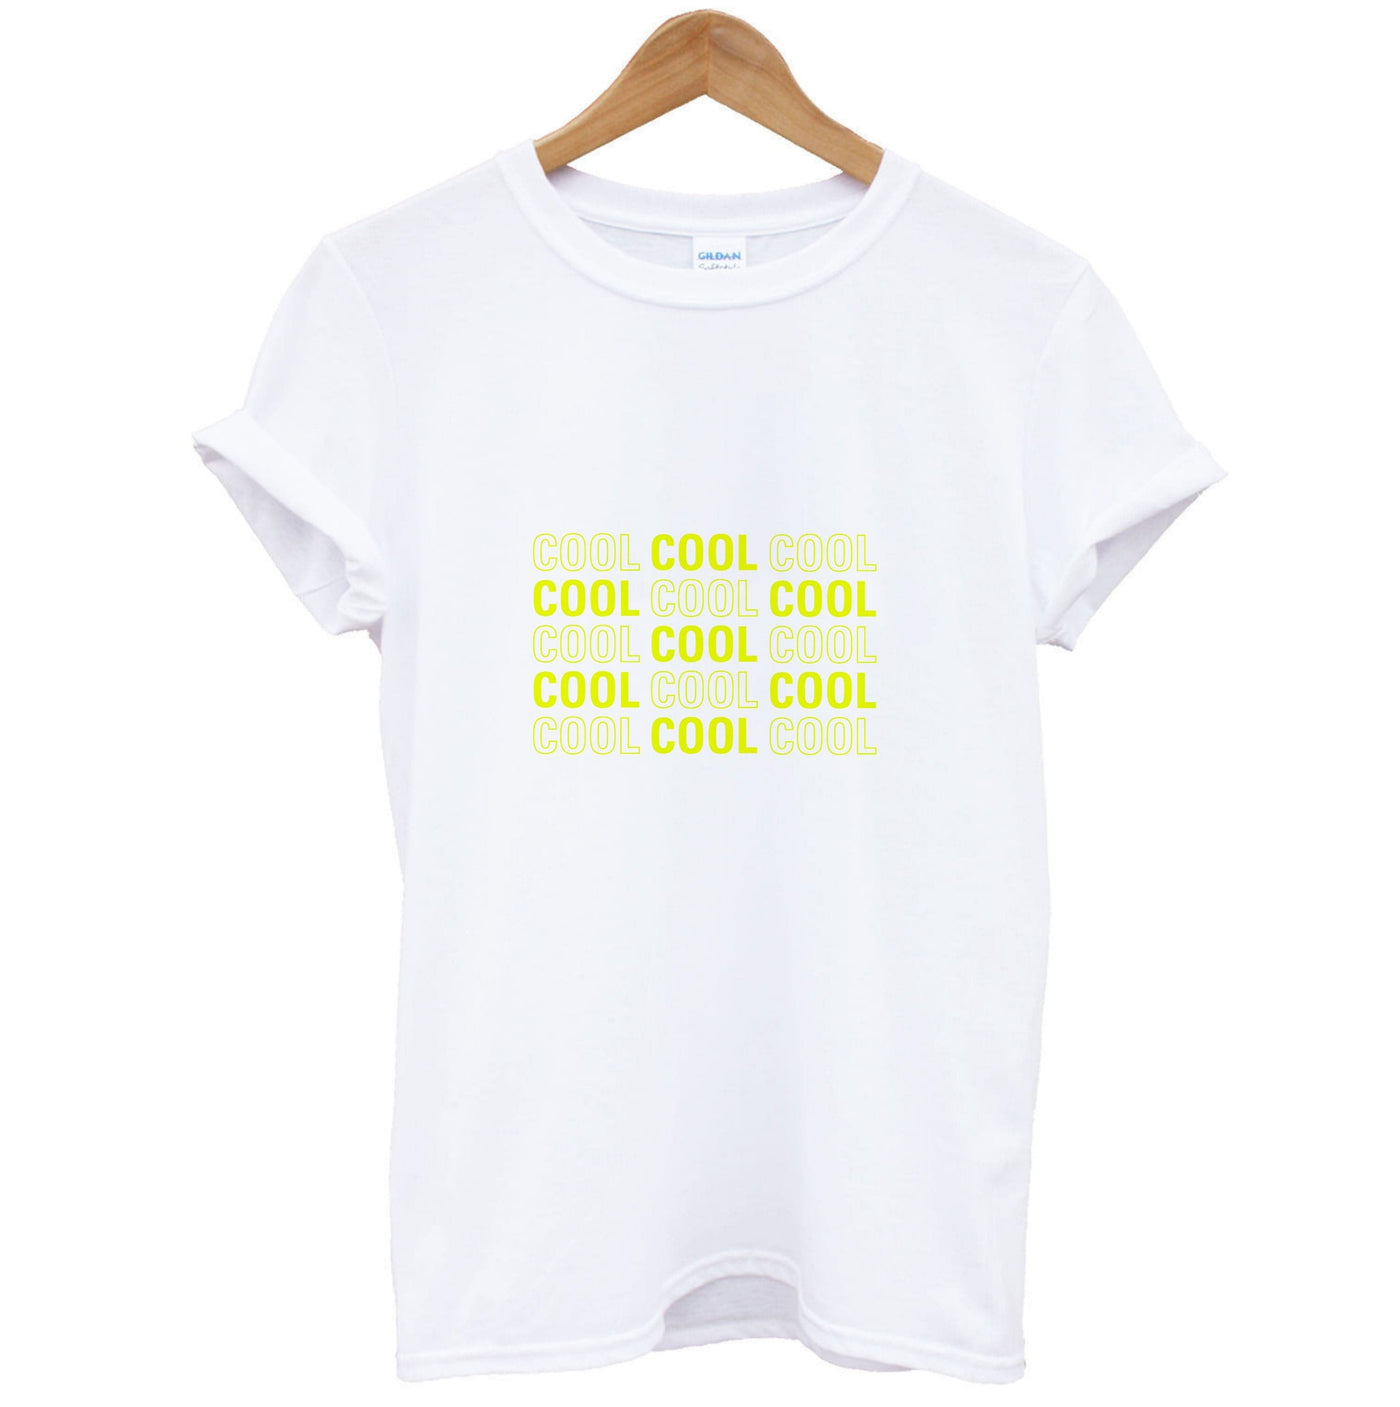 Cool Cool Cool - Brooklyn Nine-Nine T-Shirt